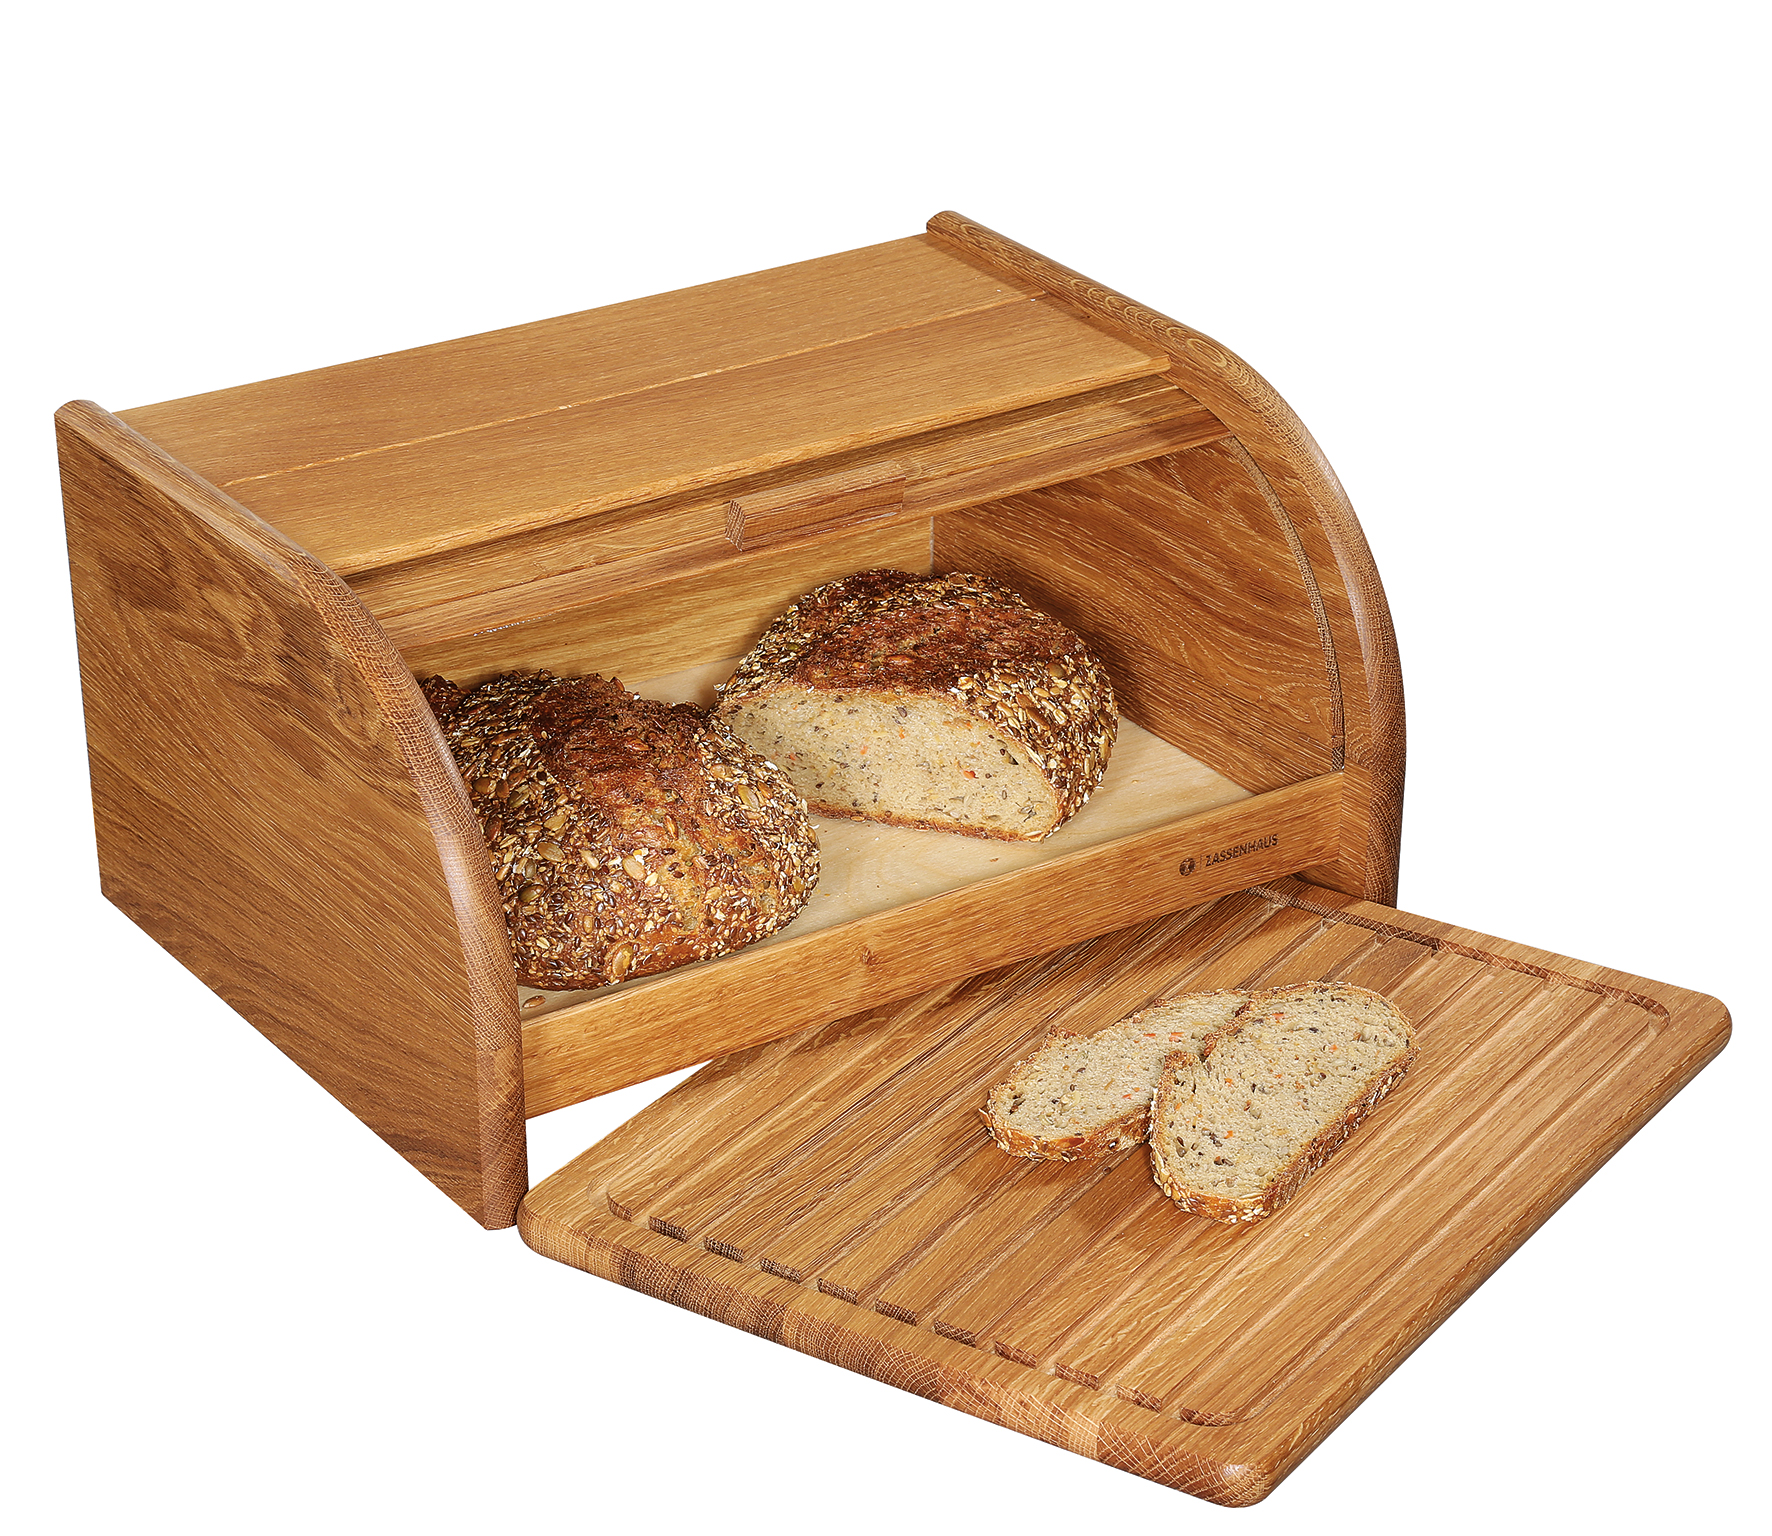 Brotkasten COUNTRY mit Brett, Eiche 40 x 30 cm Brotkasten für stilvolles Aufbewahren von Brot und Gebäck inklusive praktischem Brotschneidbrett